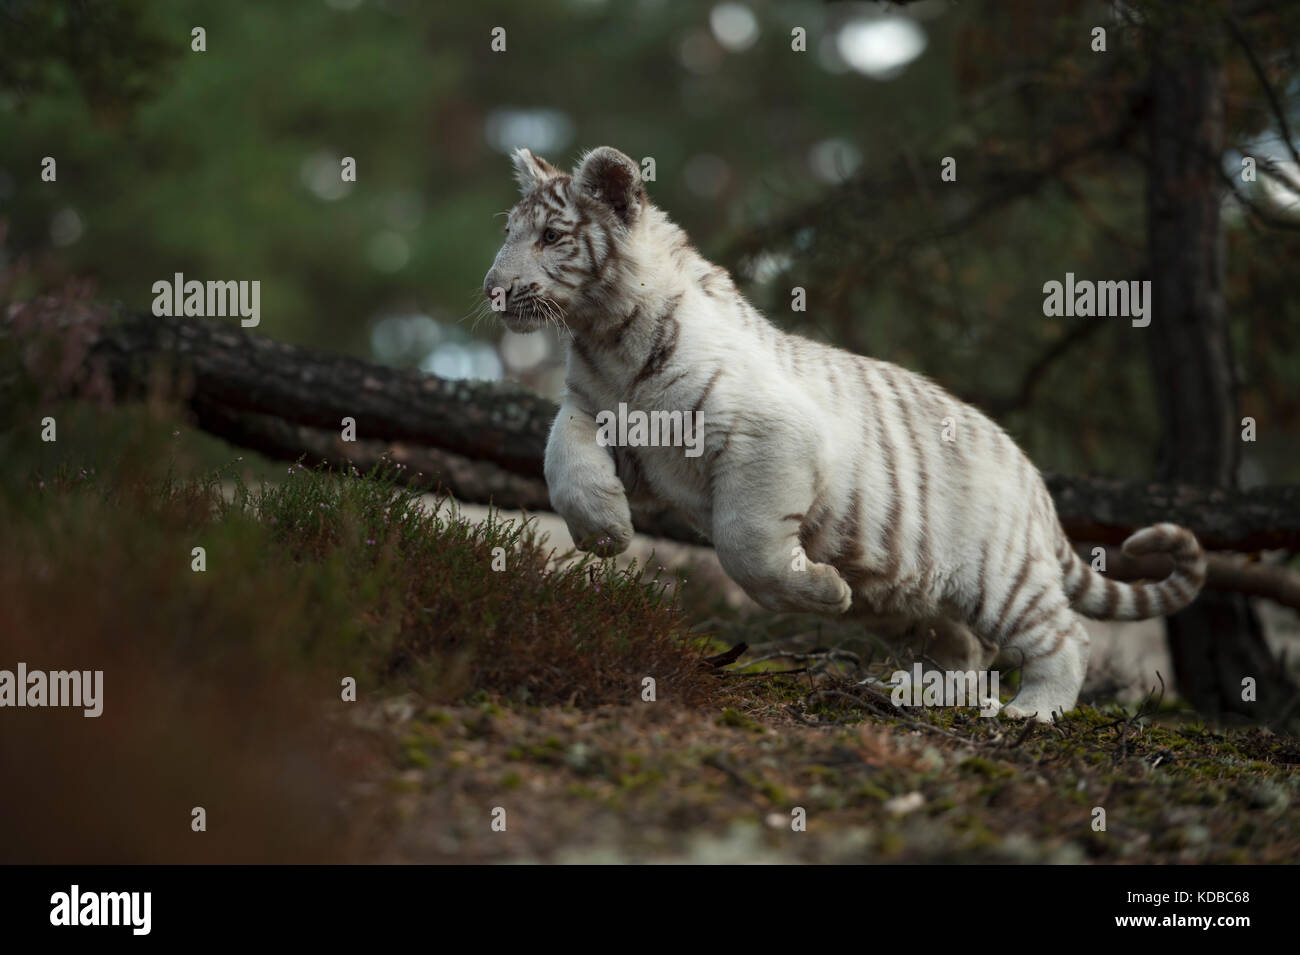 Royal Bengal Tiger / Königstiger ( Panthera tigris ), weiß morph, springen durch das Gestrüpp eines natürlichen Waldes, laufen schnell, verspielt, Tiefpunkt Stockfoto